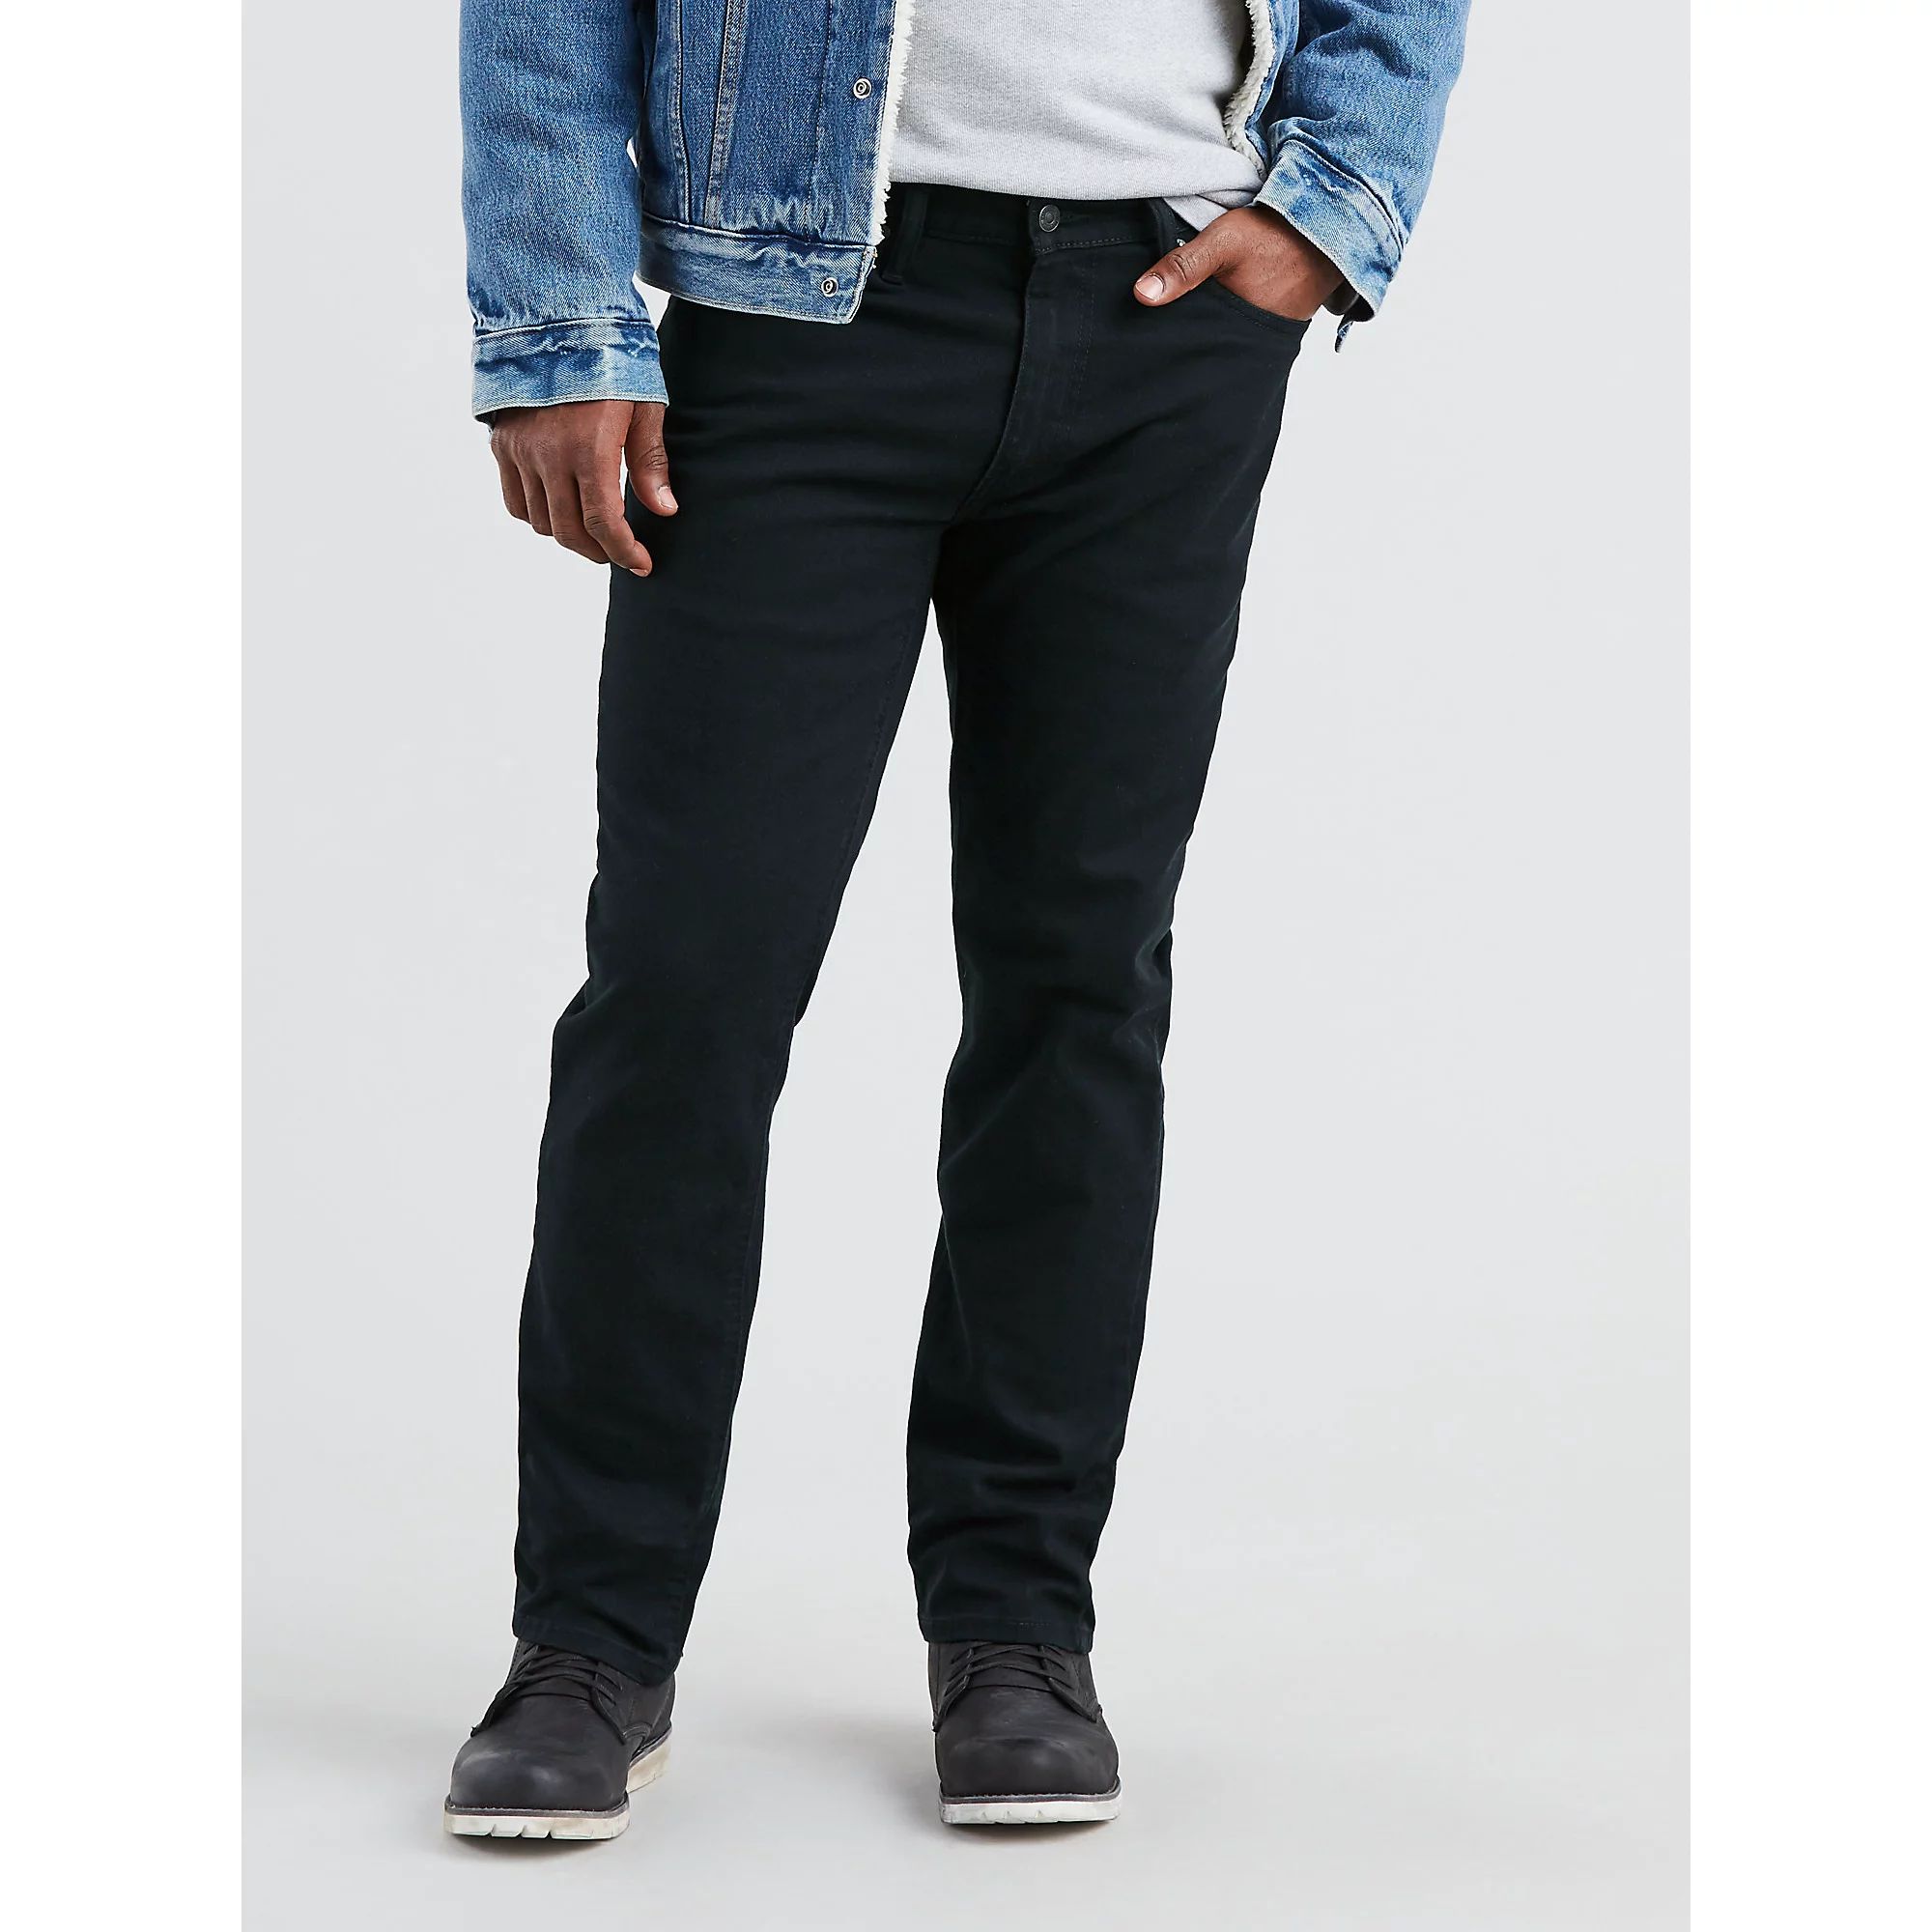 Levi's Men's 541 Athletic Fit Jeans | Walmart (US)